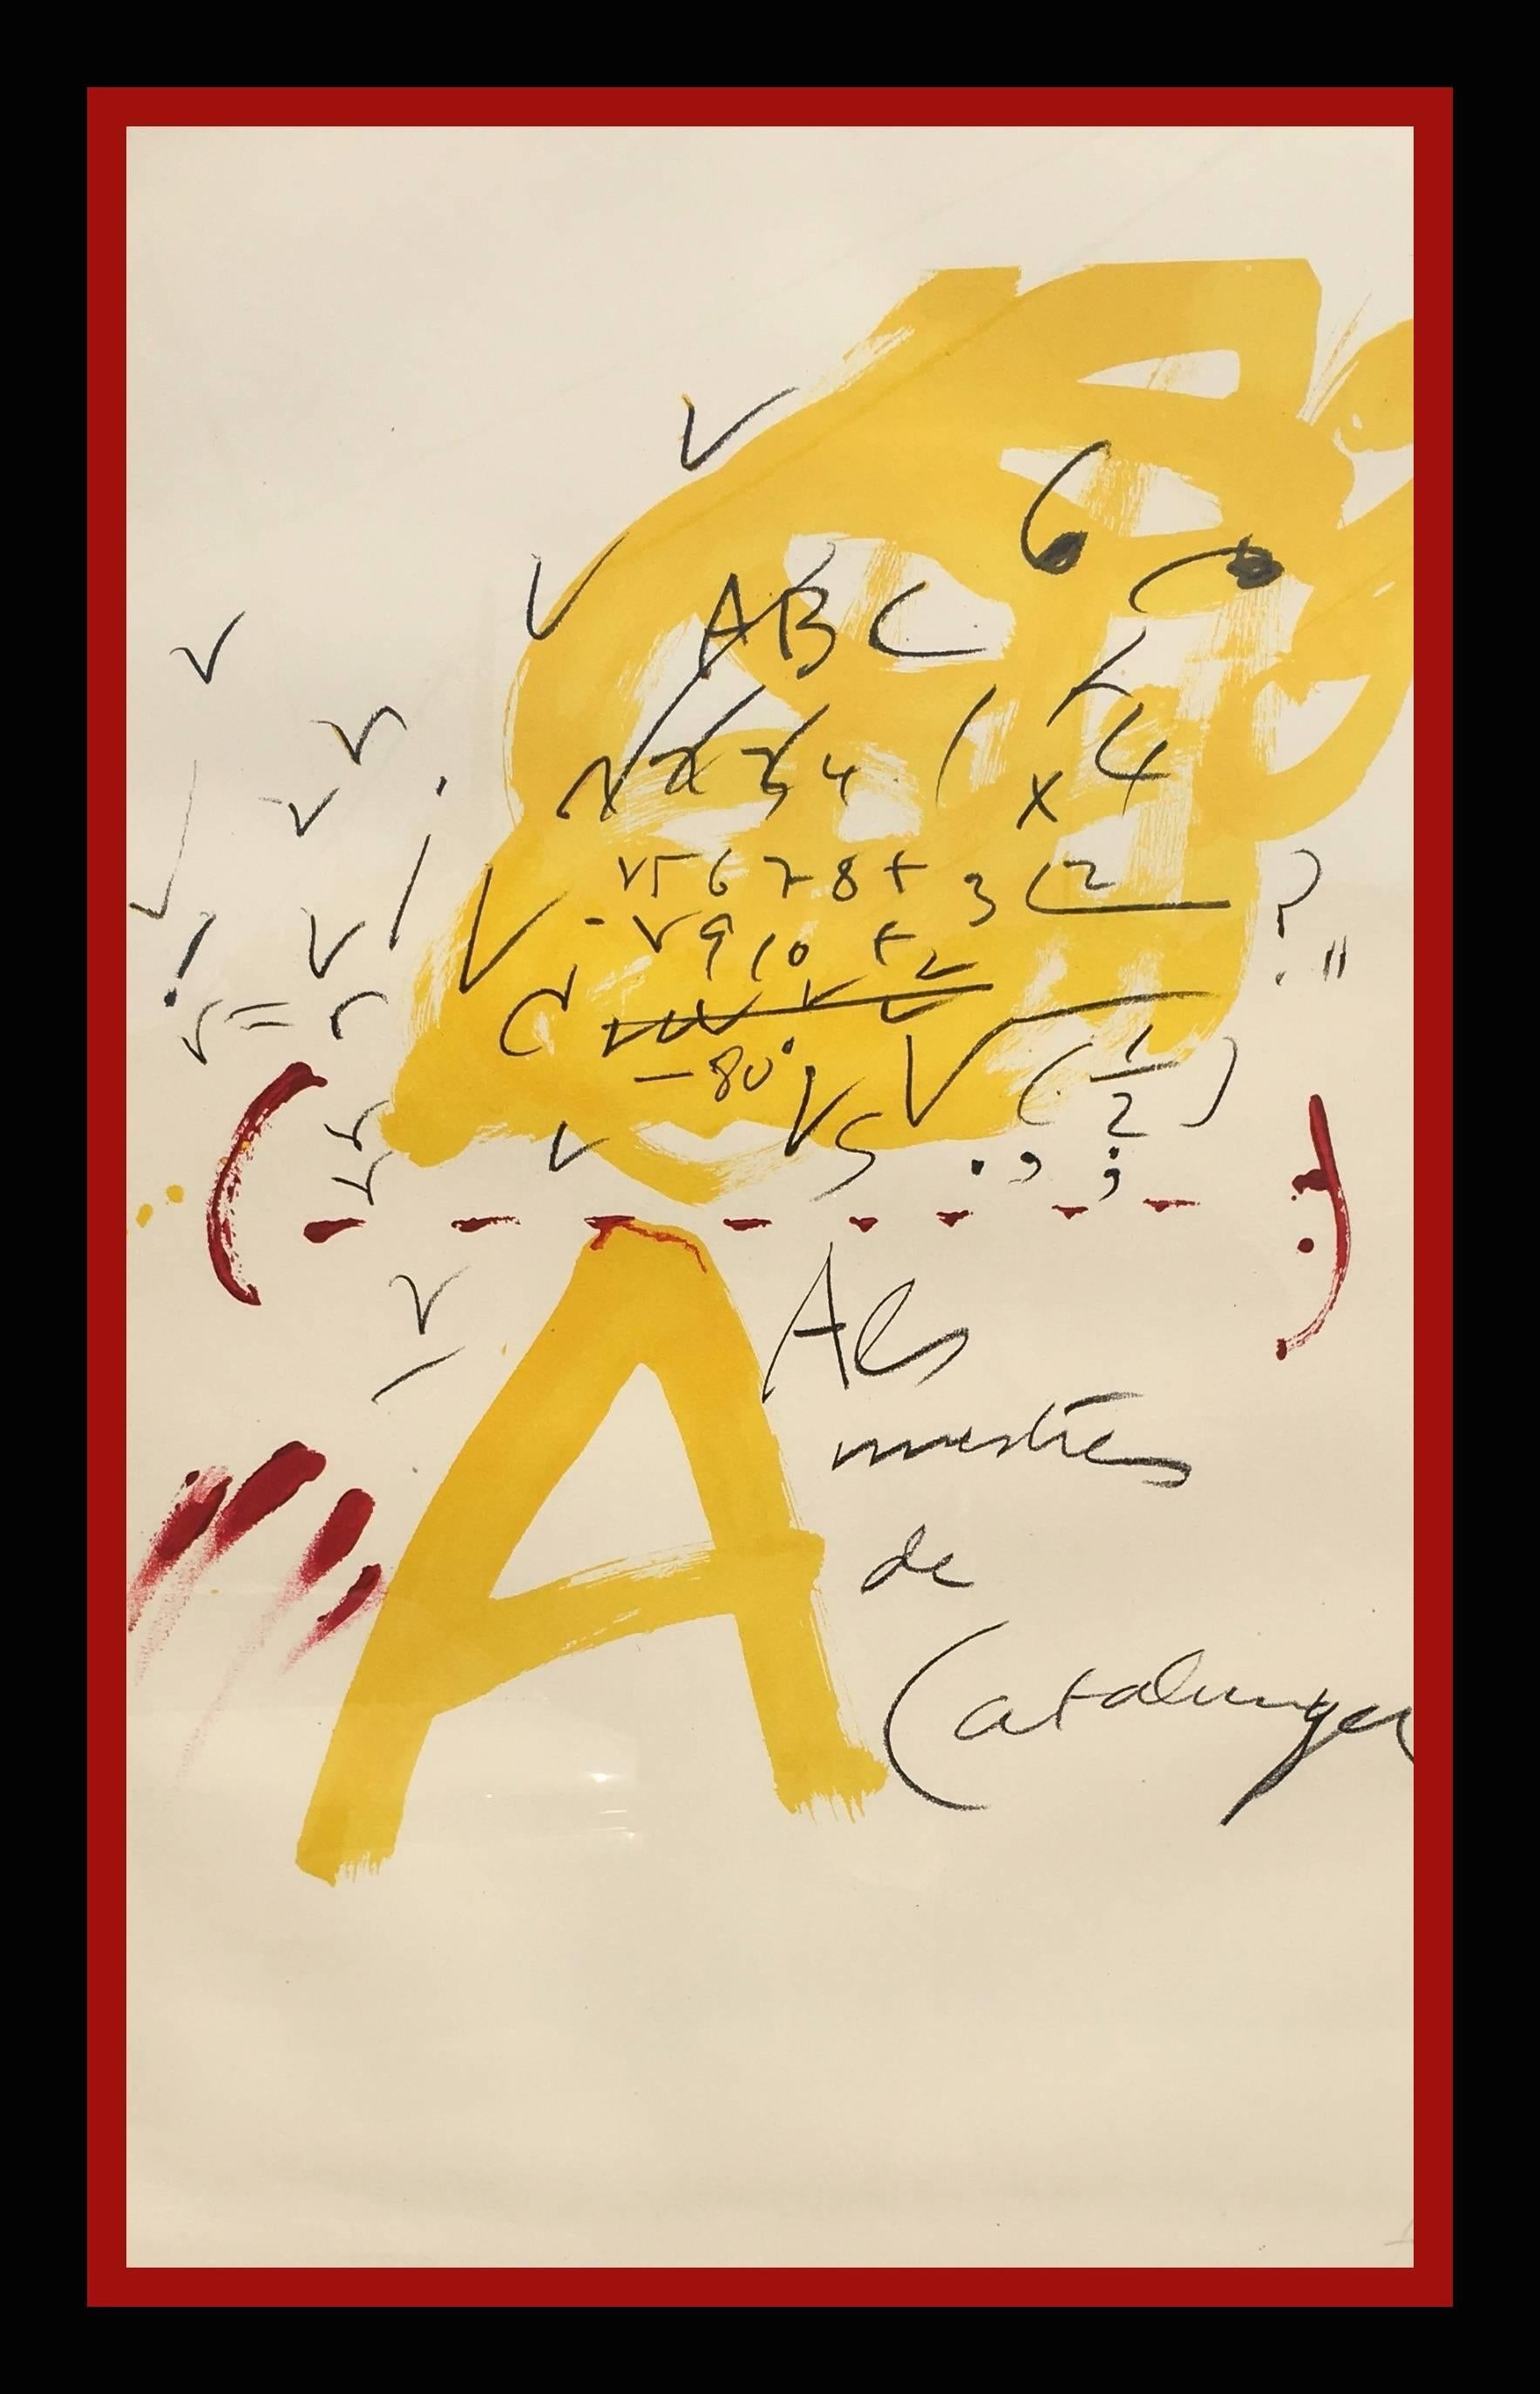 Abstract Print Antoni Tàpies - Tapies 66 Noir  Rouge  Jaune  Lithographie d'origine verticale  1974 lithographie